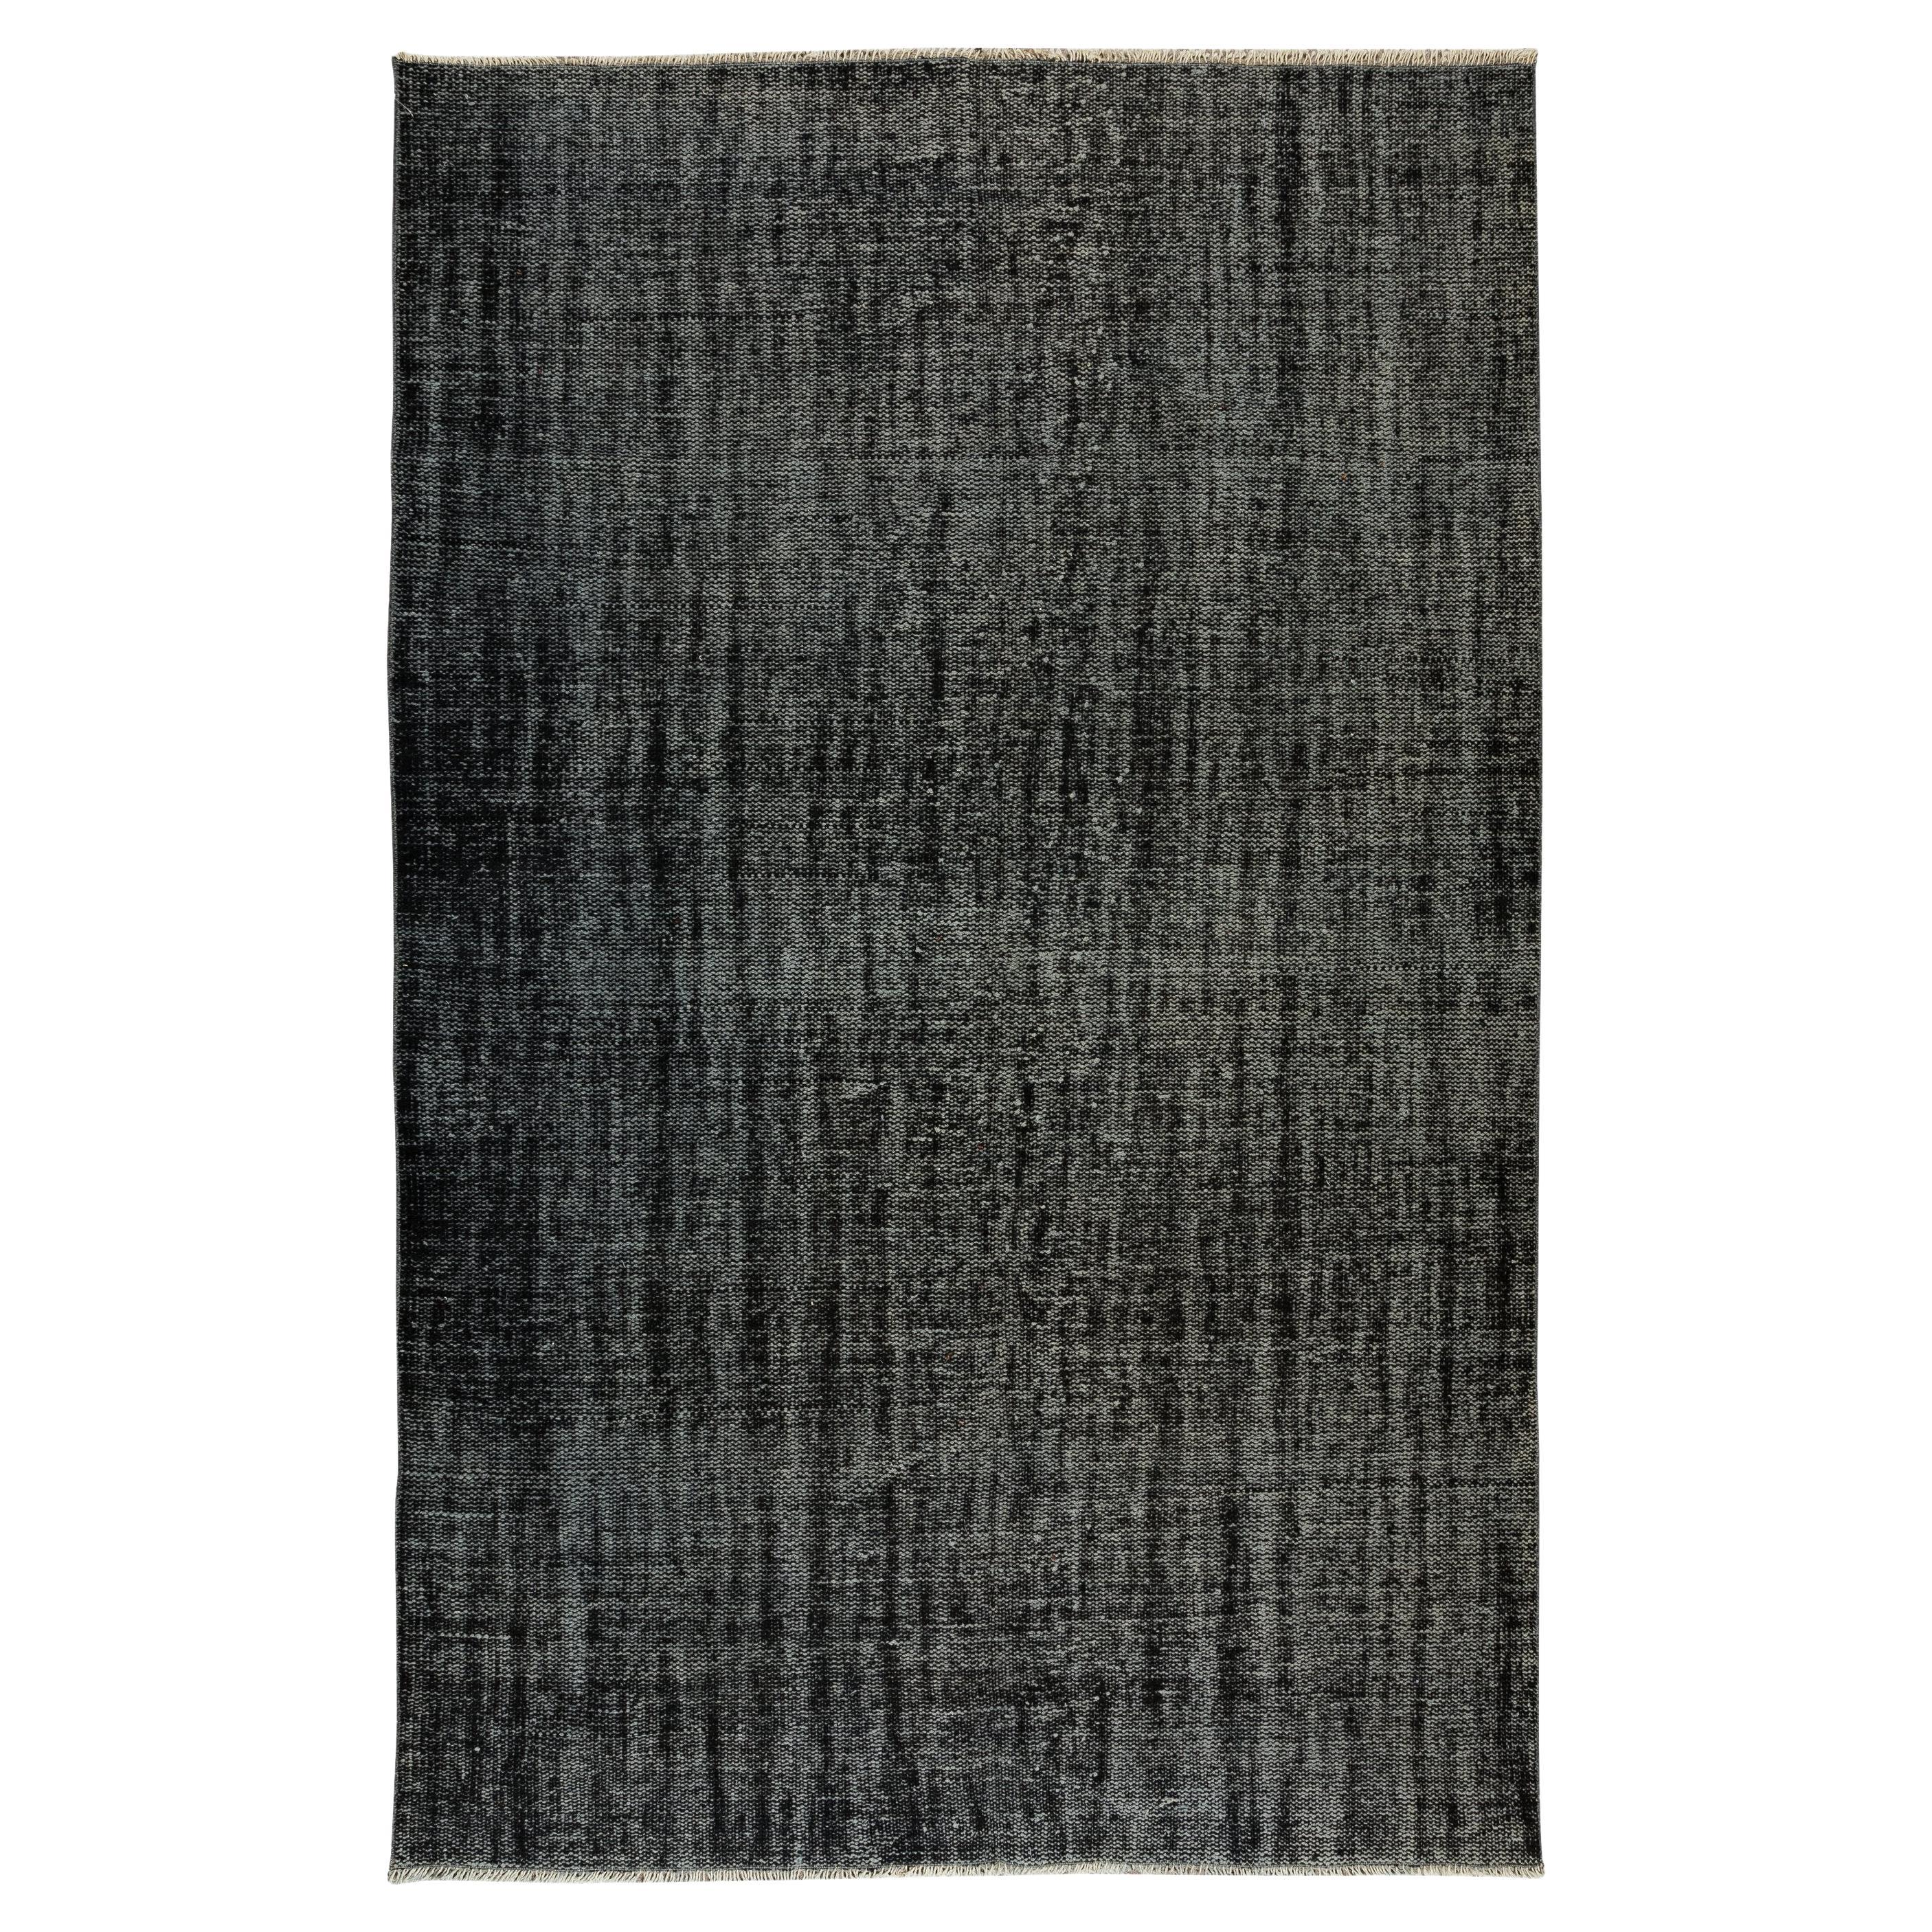 5.7x8.8 Ft Schwarzer türkischer Teppich für moderne Inneneinrichtung, handgefertigter Vintage-Teppich